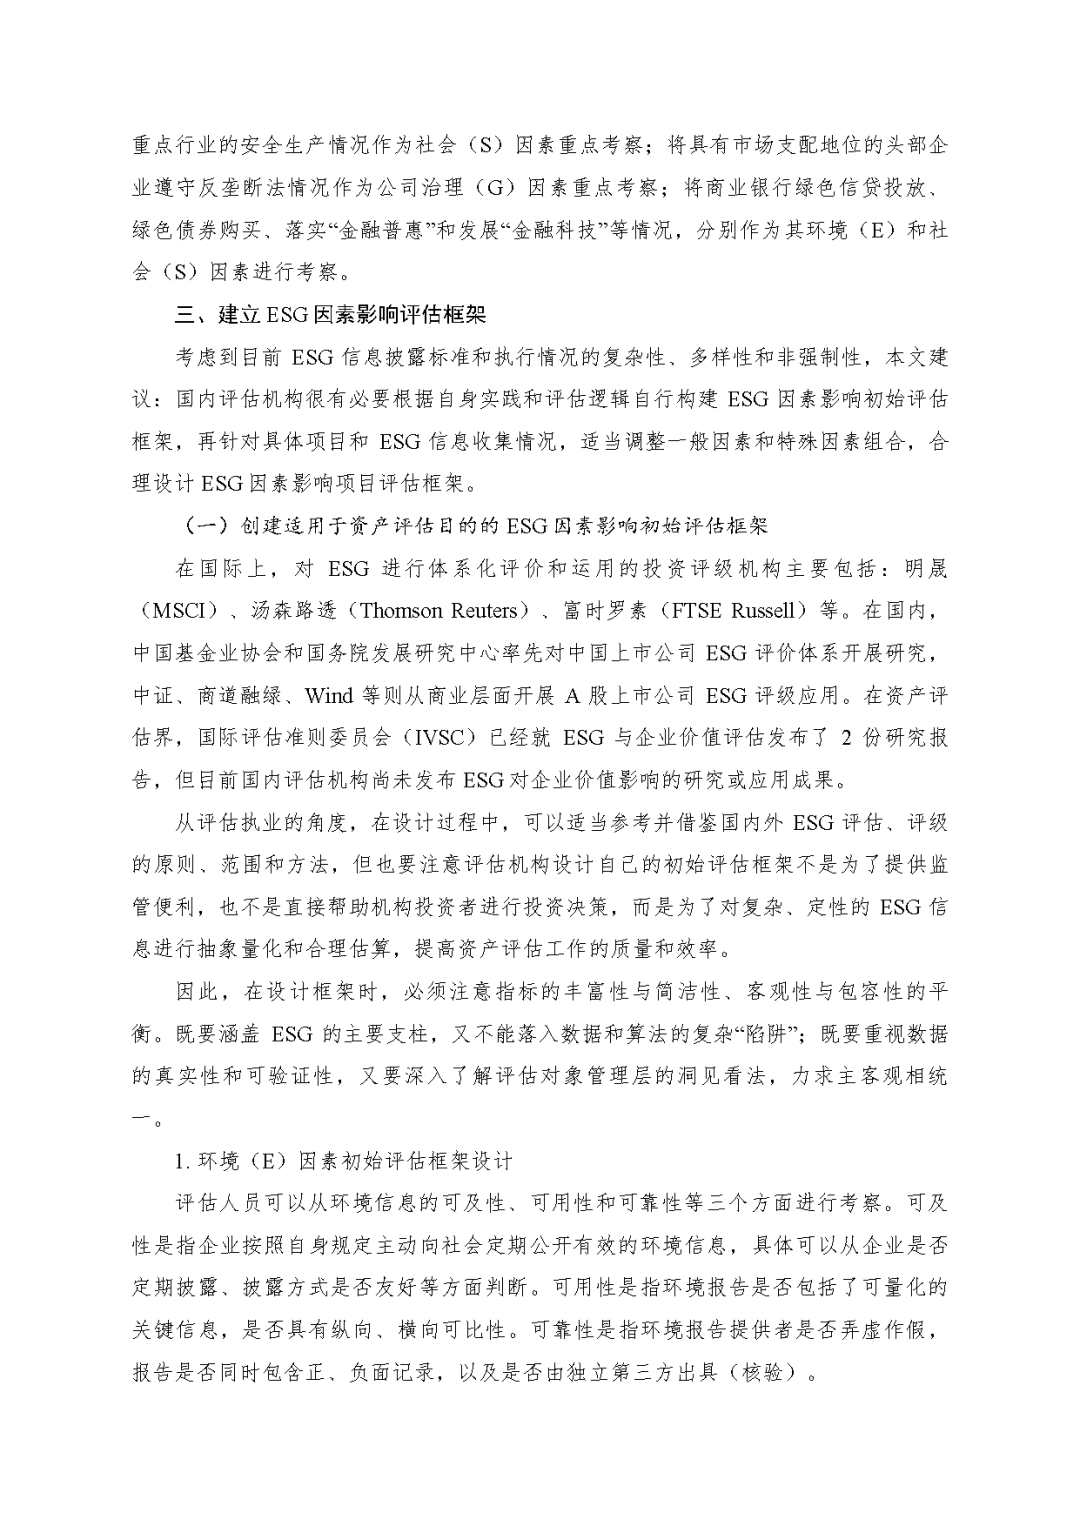 ca88官网评估於隽蓉、蒋骁等在《中国资产评估》宣布专业文章《ESG因素对市场法修正影响的初探》